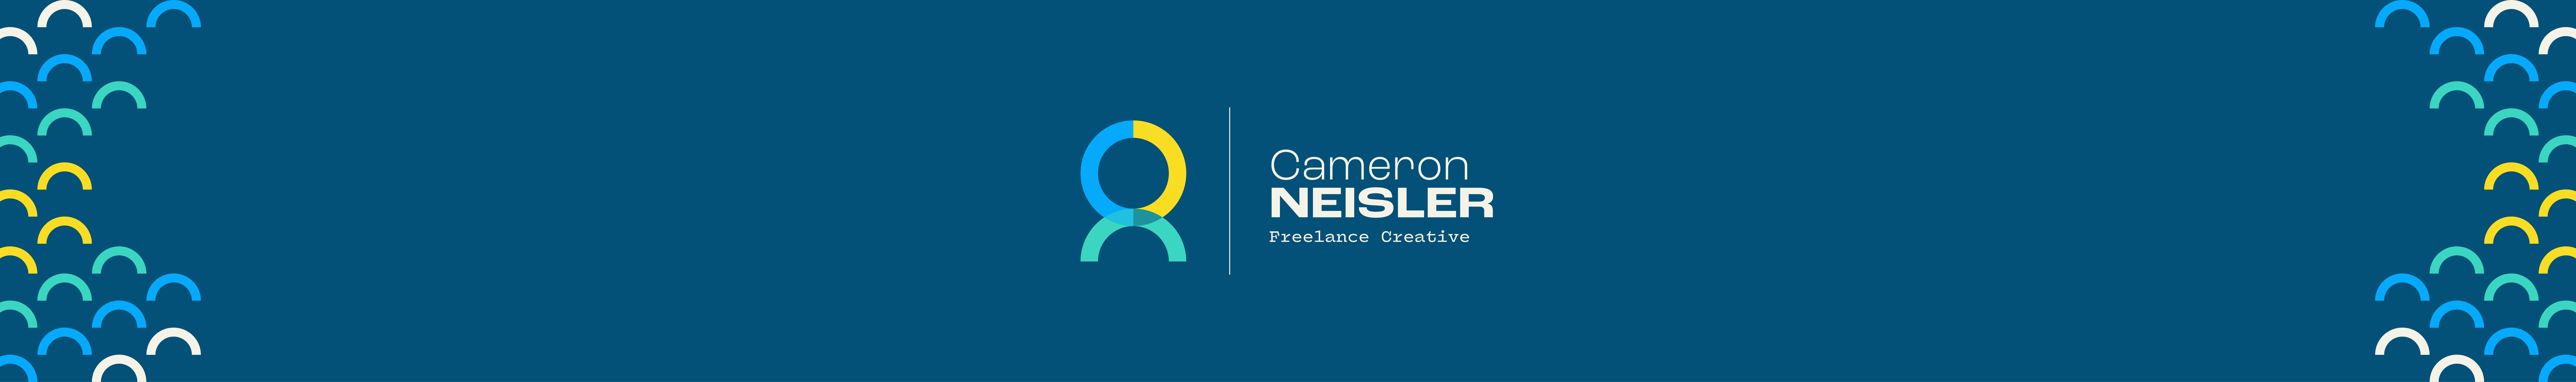 Cameron Neisler's profile banner